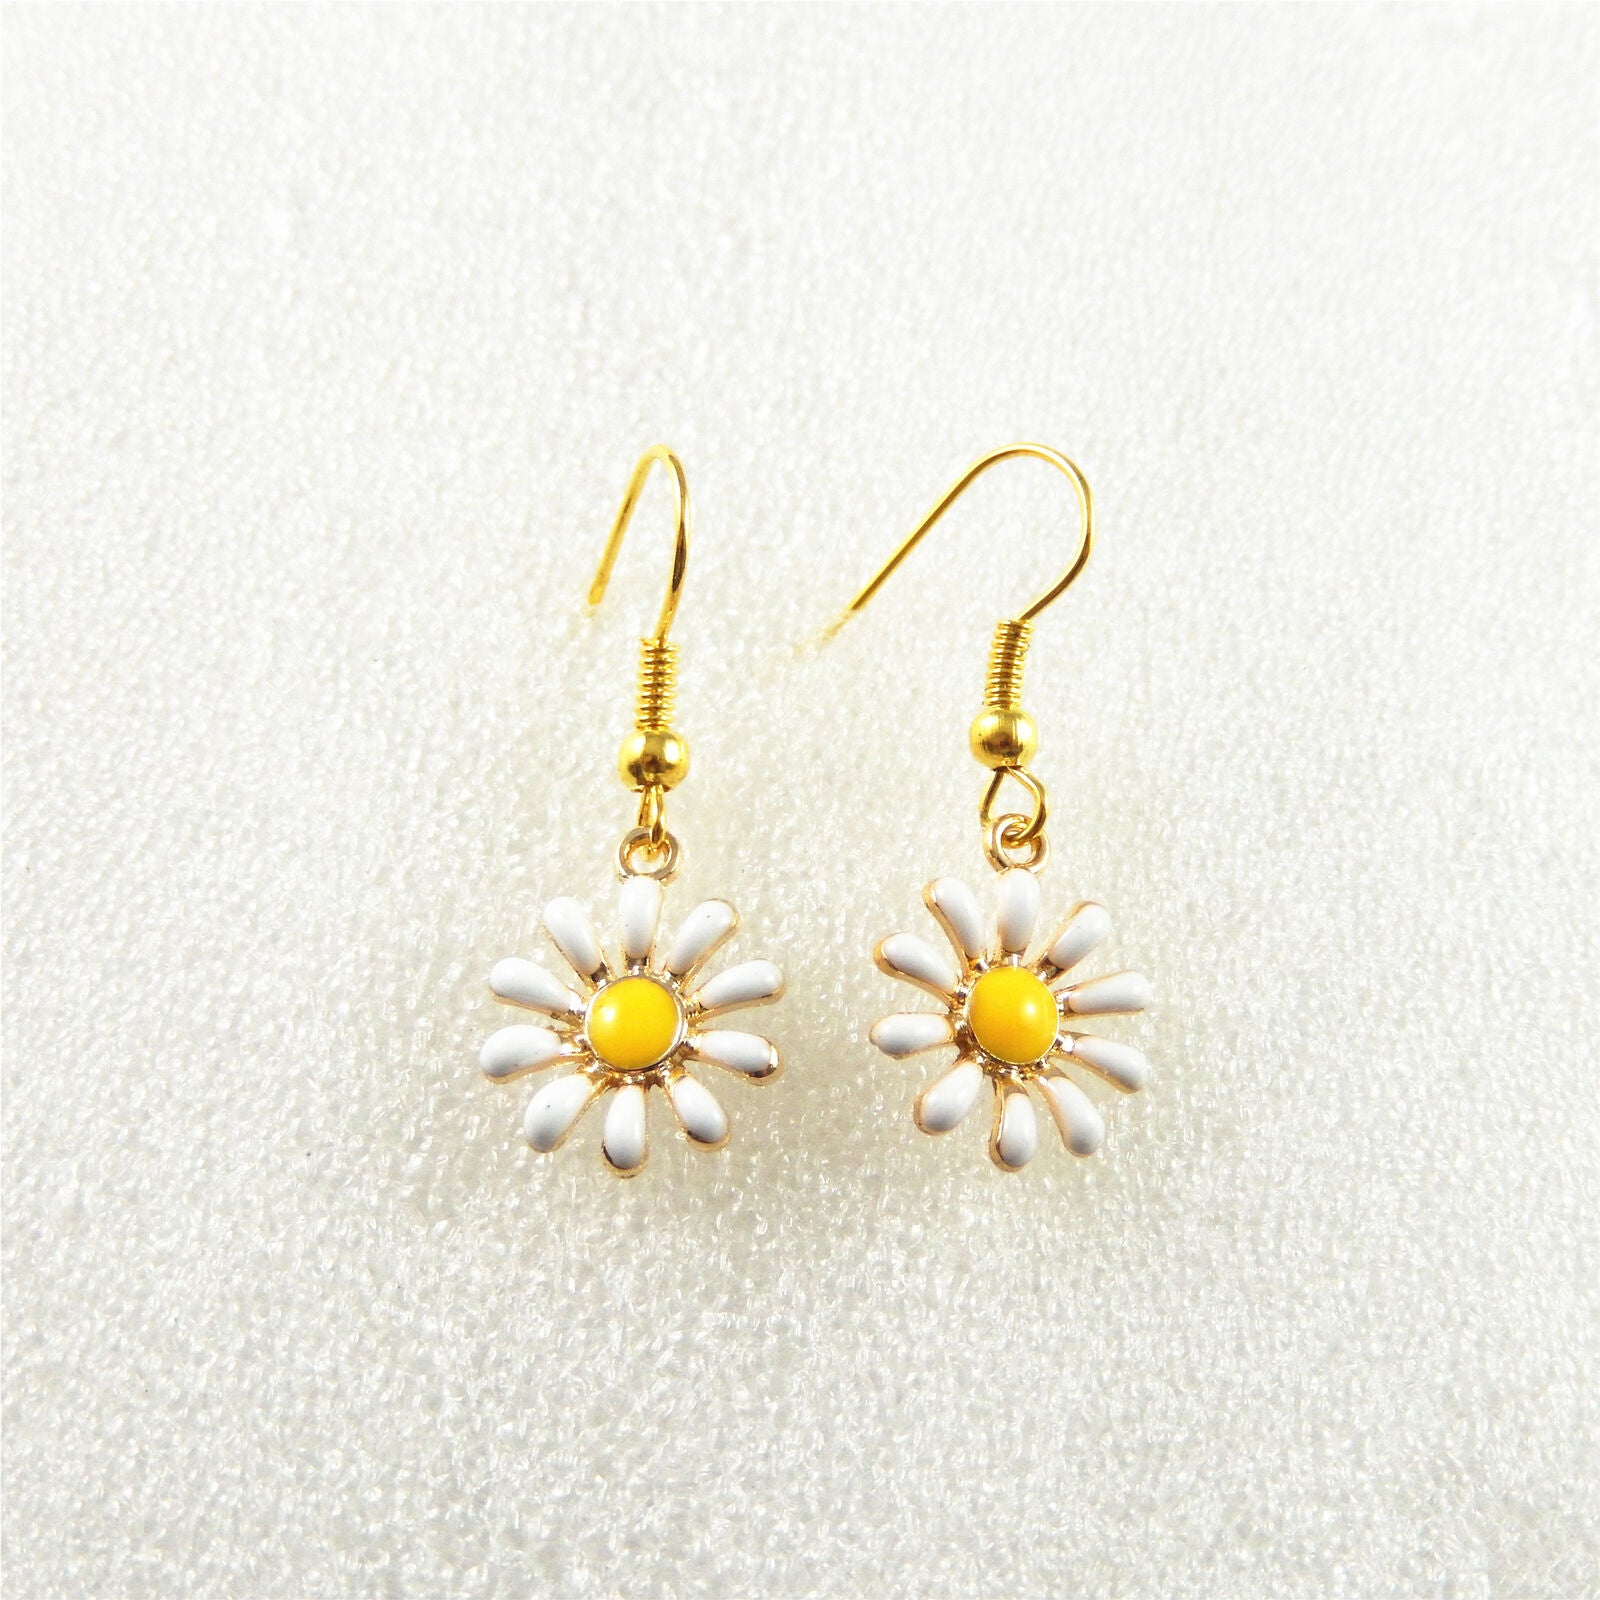 1 Pair Golden Alloy Ear Hook Sun Flower Earrings Dangle Jewelry French Ear Wire